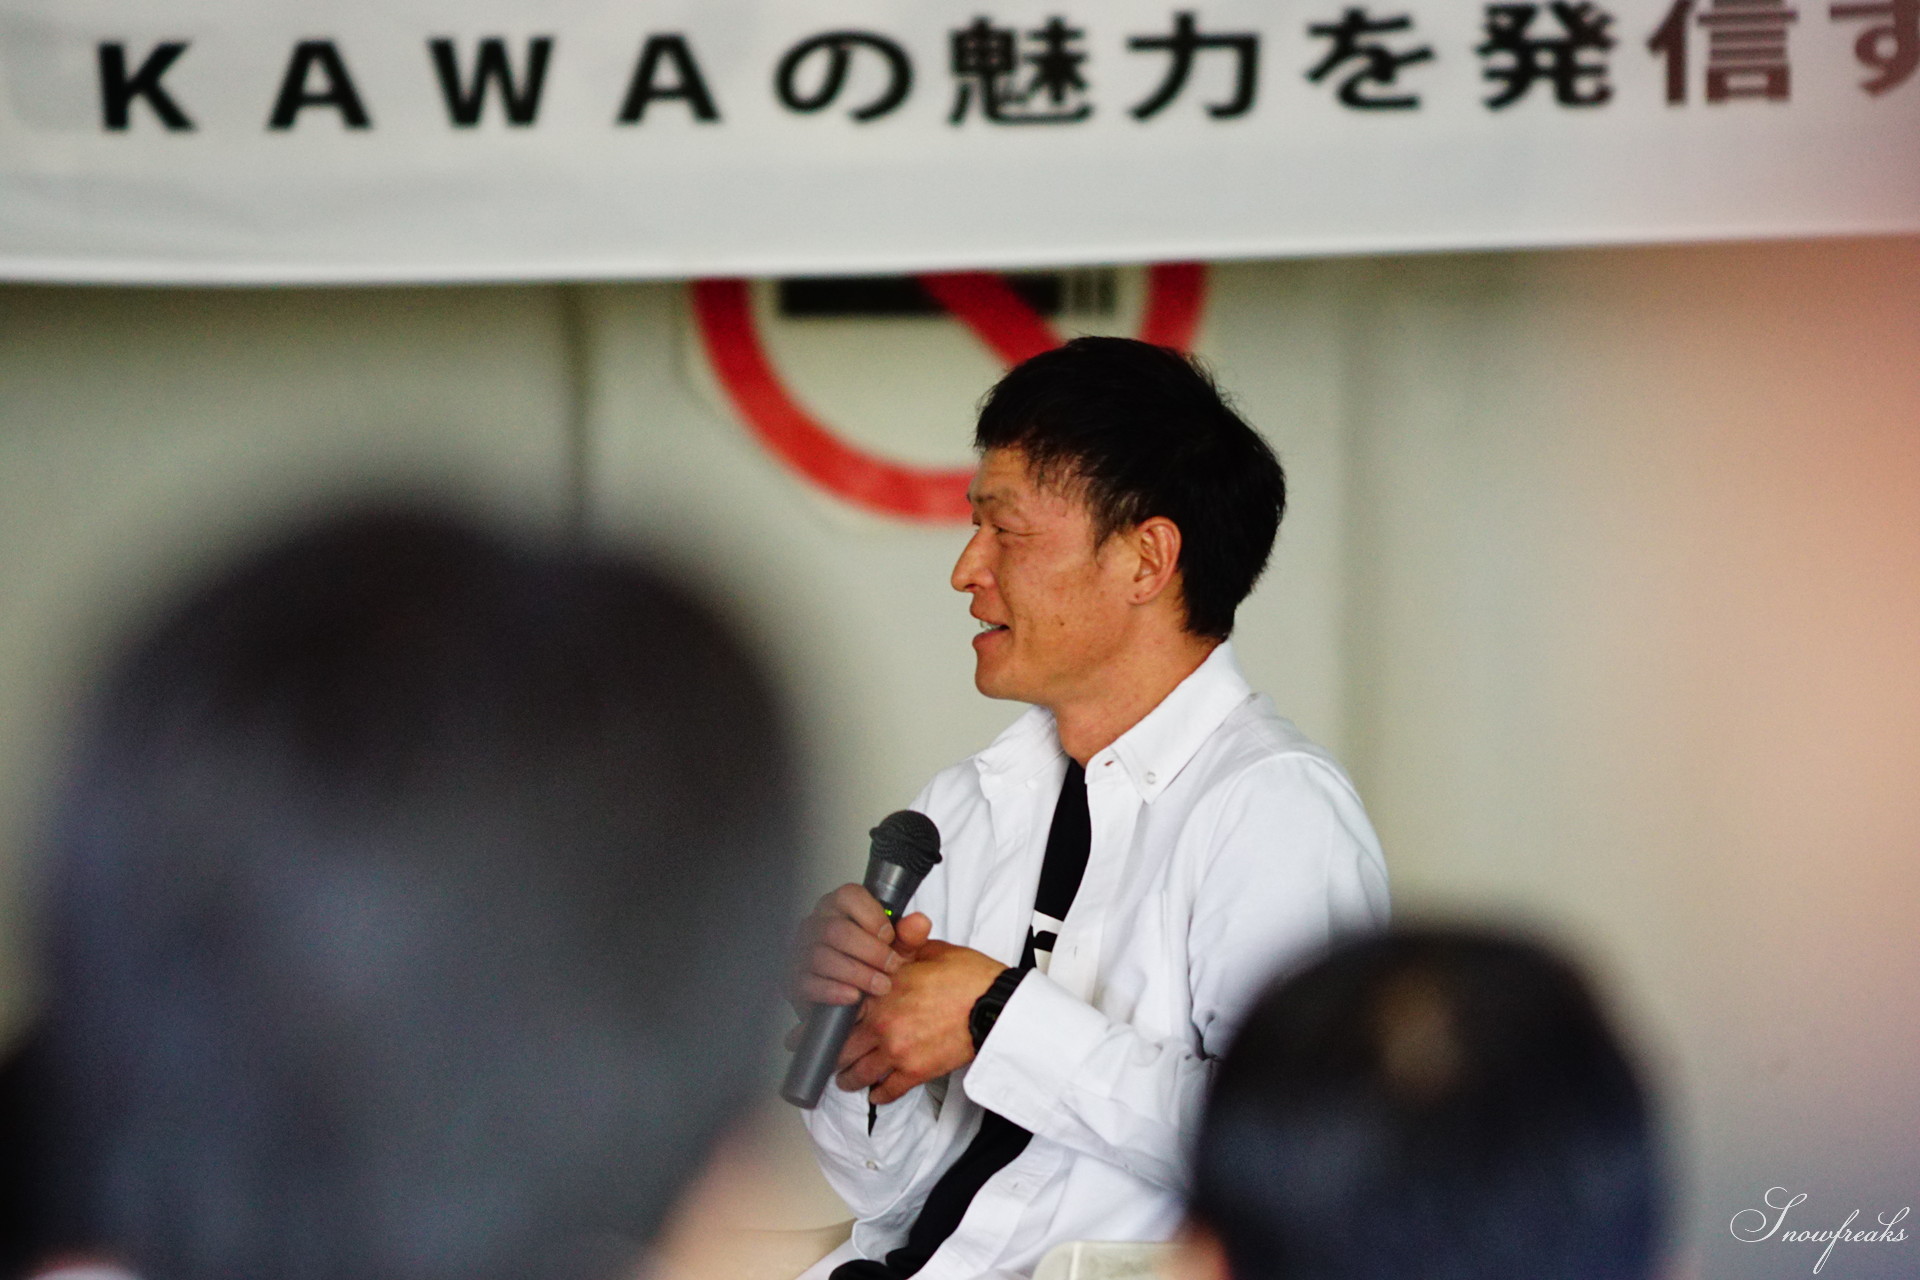 プロスキーヤー・浅川誠さんが講演で熱く語る。旭川青年会議所公開例会「ASAHIKAWAの魅力を発信する」in サンタプレゼントパーク（旭川市）